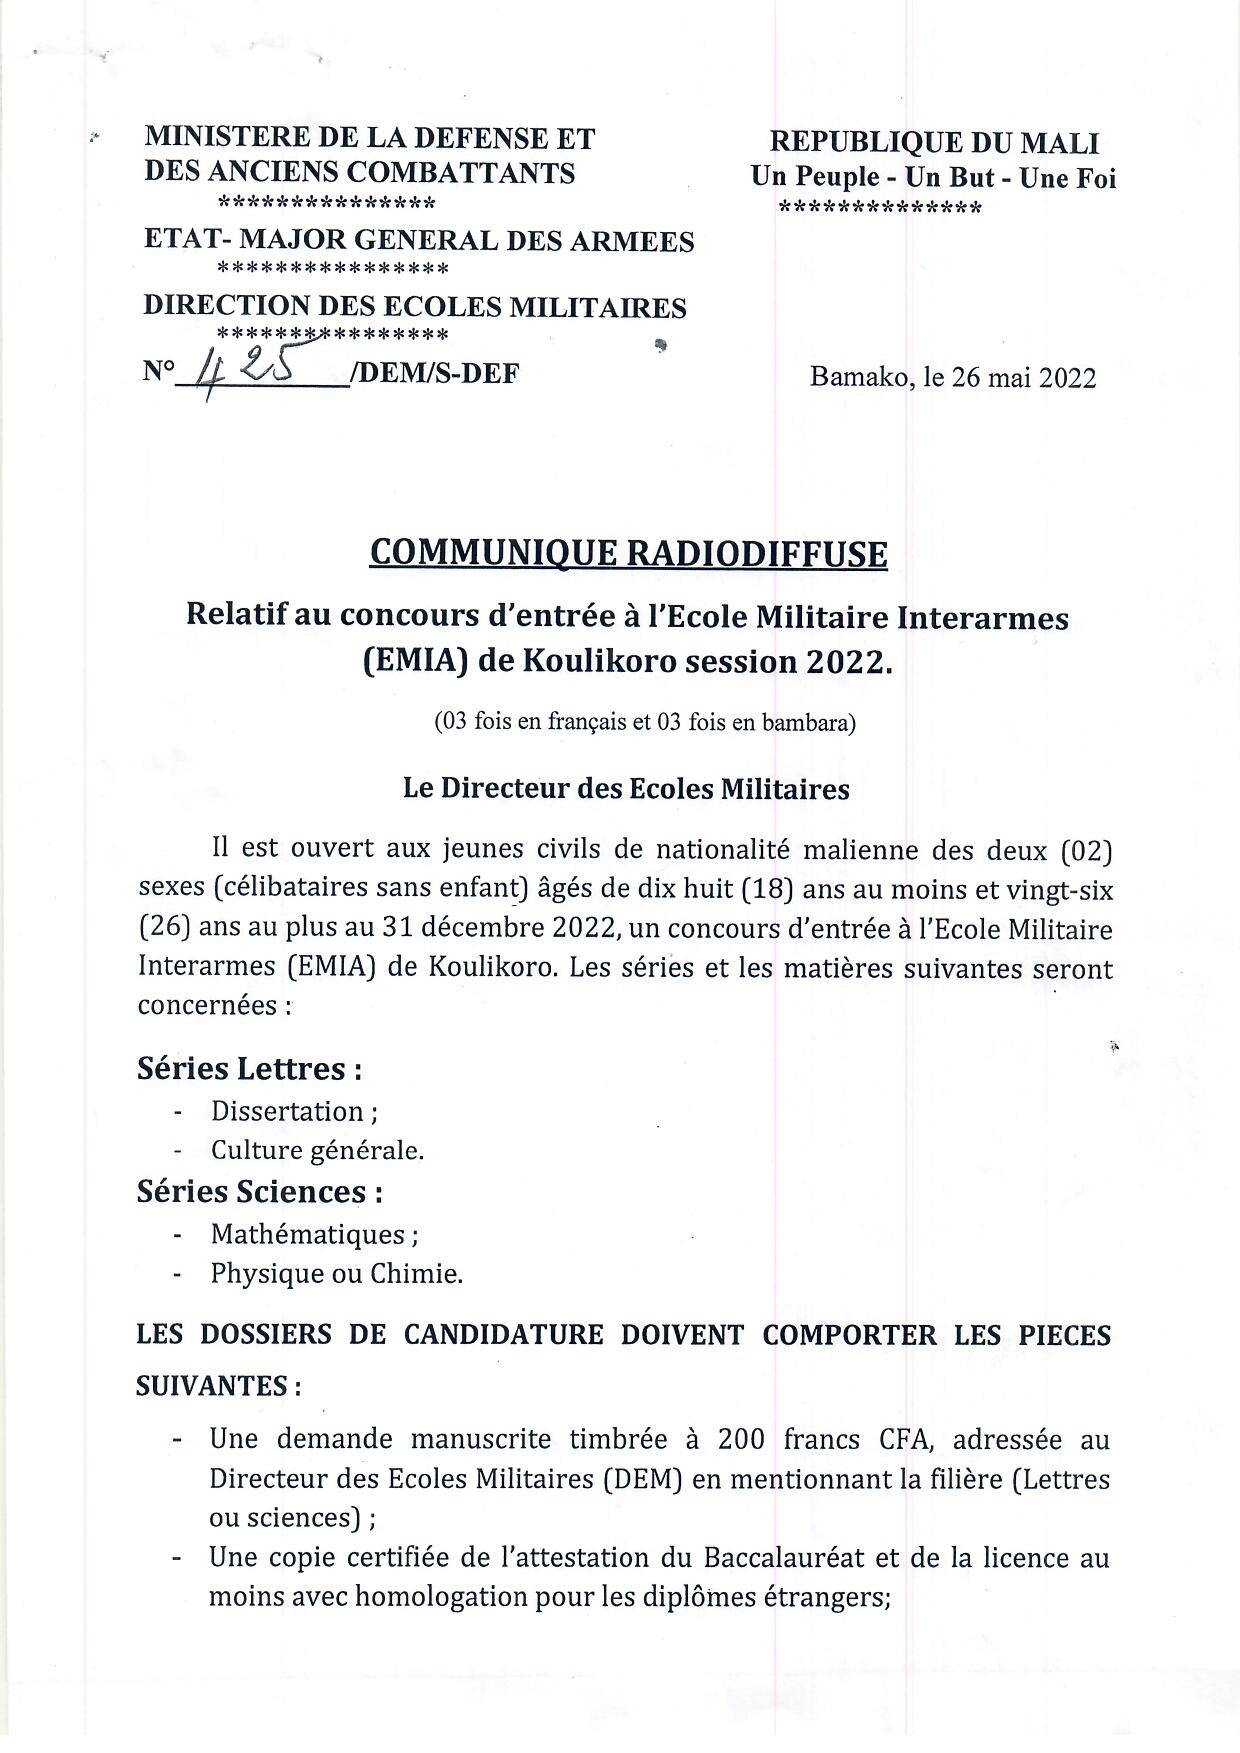  COMMUNIQUE RELATIF AU CONCOURS D'ENTREE A L'ECOLE INTERARMES (EMIA) DE KOULIKORO, SESSION 2022